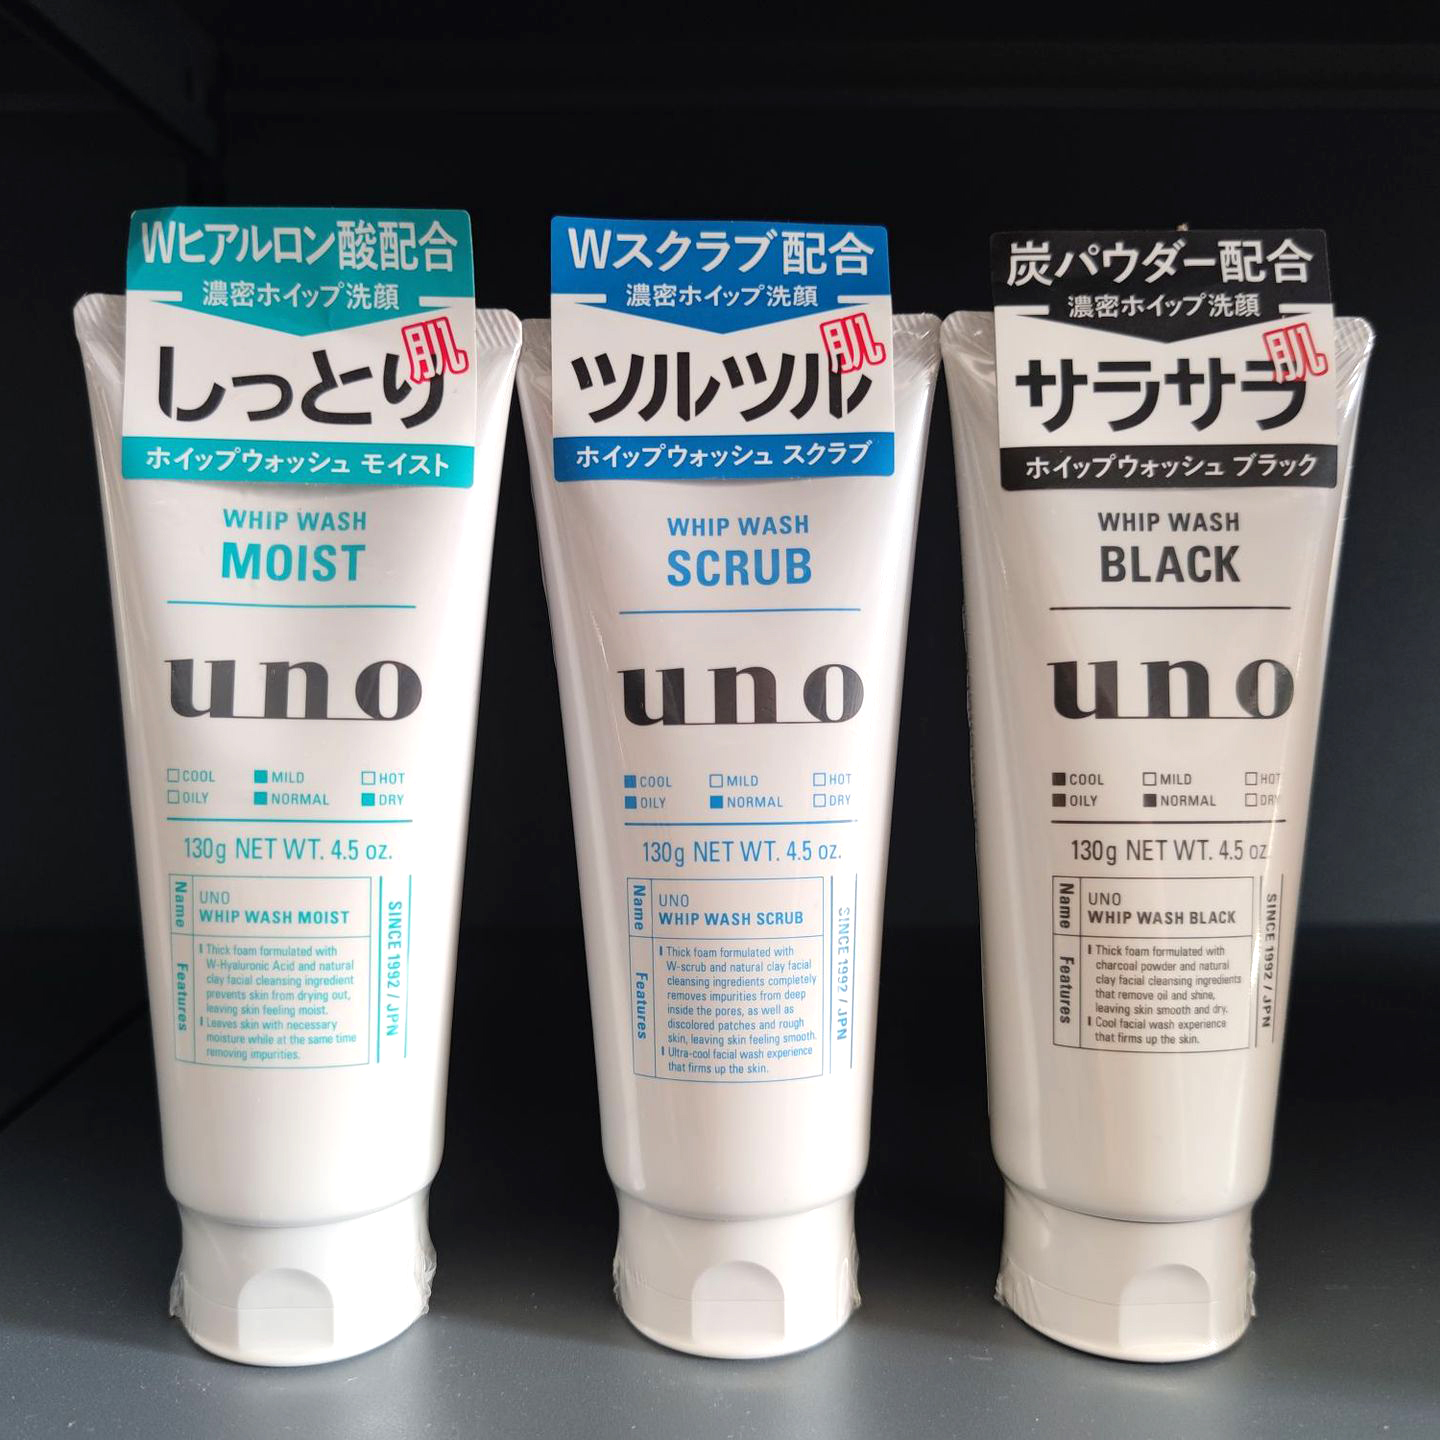 [Nội Địa Nhật Bản] Sữa rửa mặt nam tạo bọt Sạch nhờn cho da dầu UNO Whip Wash Nhật Bản 130g